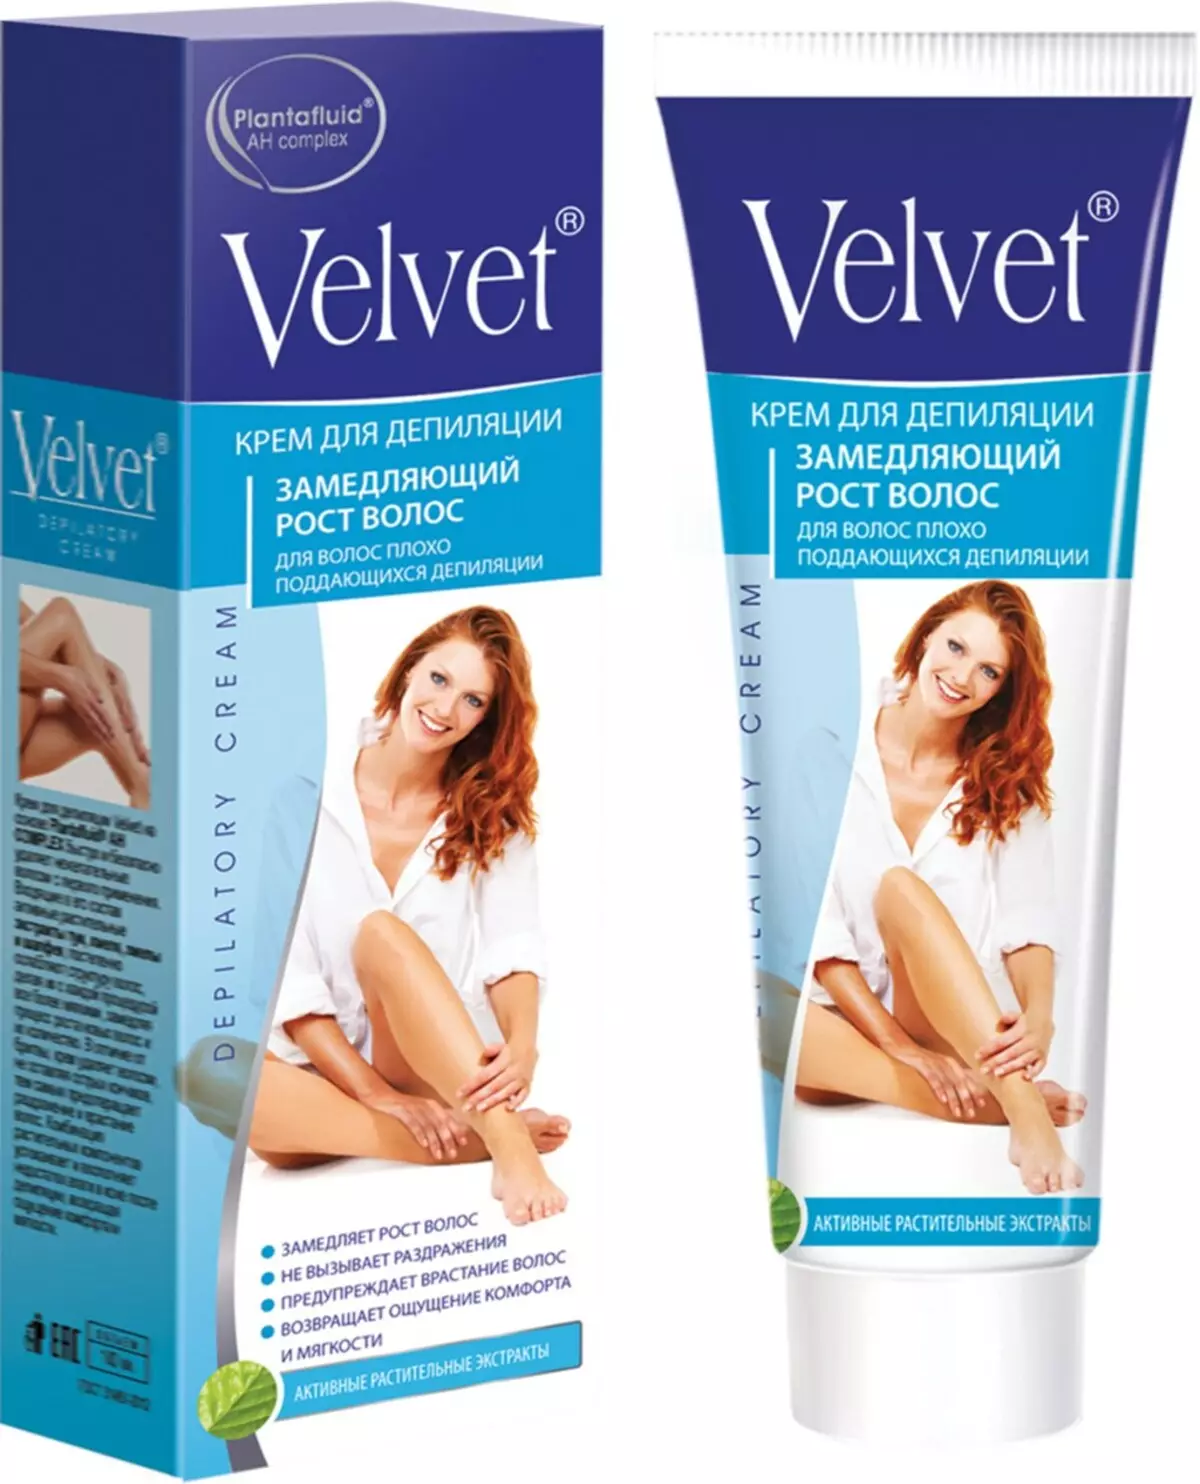 Velvet Cream For Depolation: Rêbername ji bo Bikaranînê, hûn hewce ne ku hûn çiqas bihêlin, roja qedandinê, hilberîna hilberê û nirxandinan 15988_10